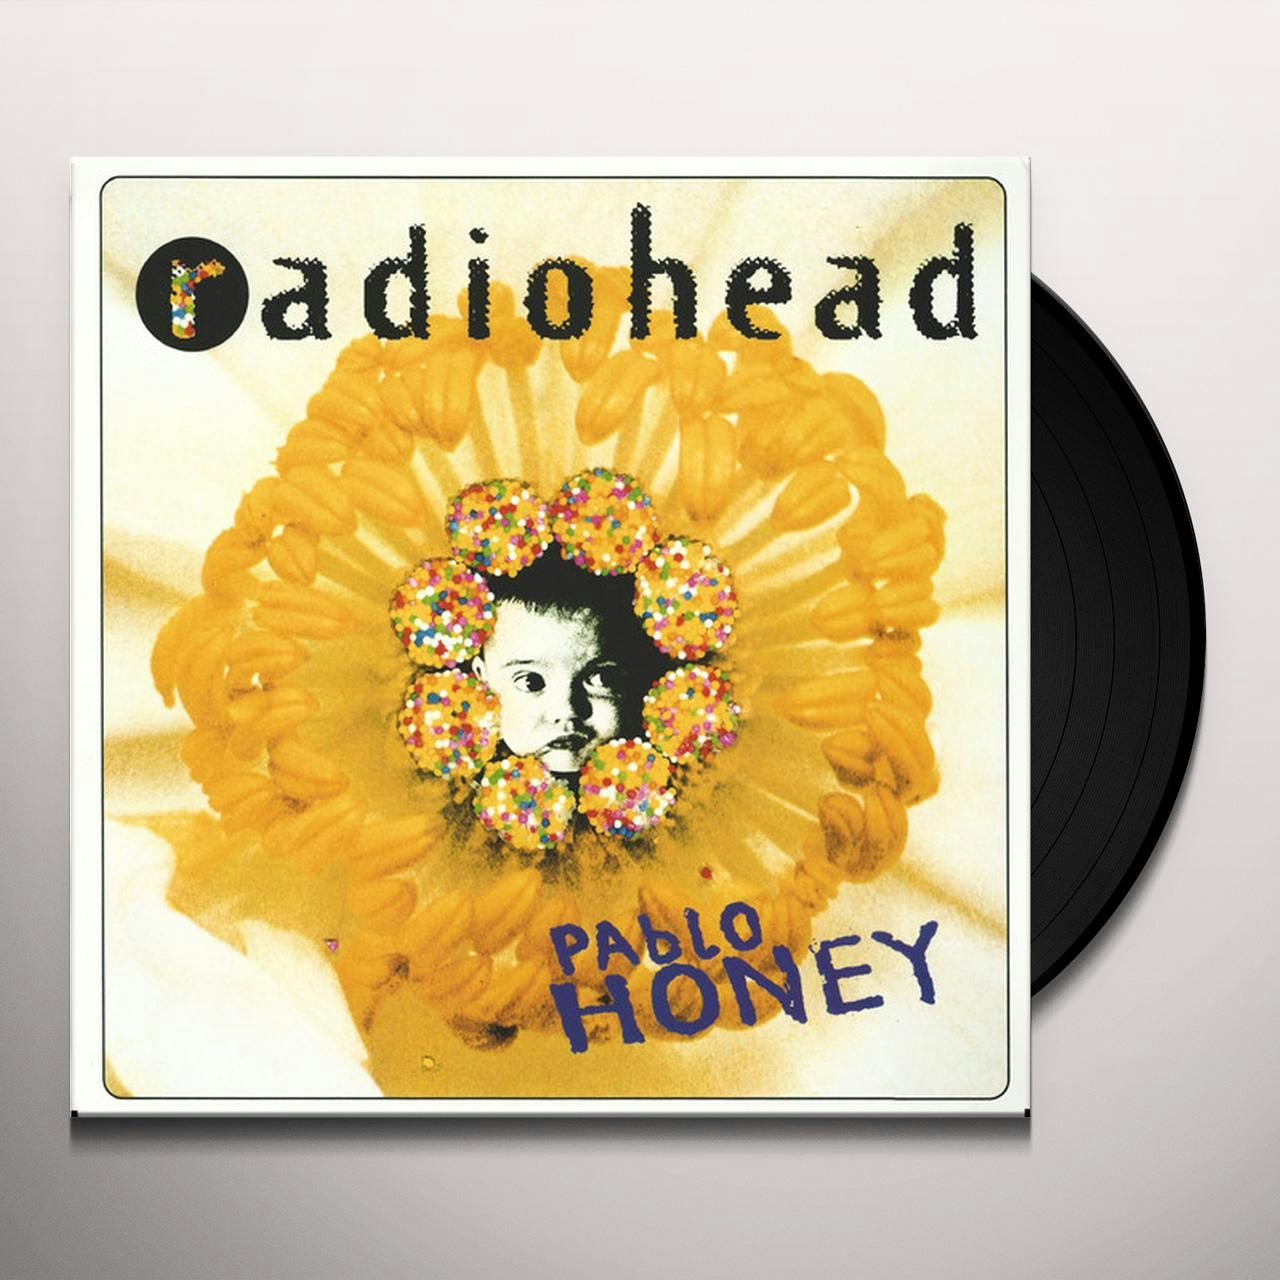 Pablo Honey Vinyl Record - Radiohead